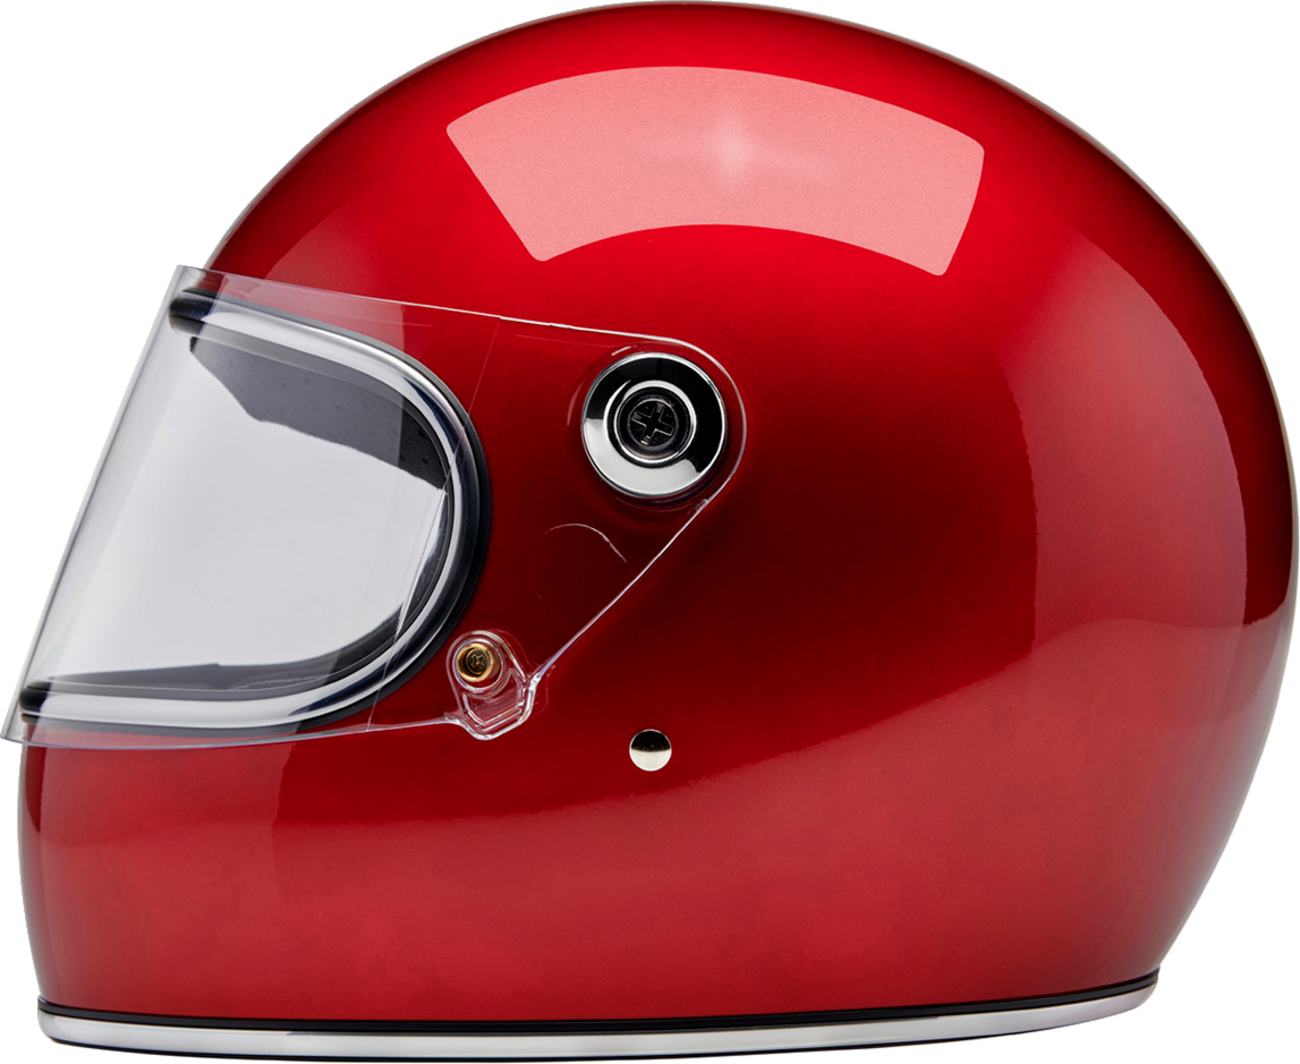 BILTWELL Gringo S Helmet - Metallic Cherry Red - Large 1003-351-504